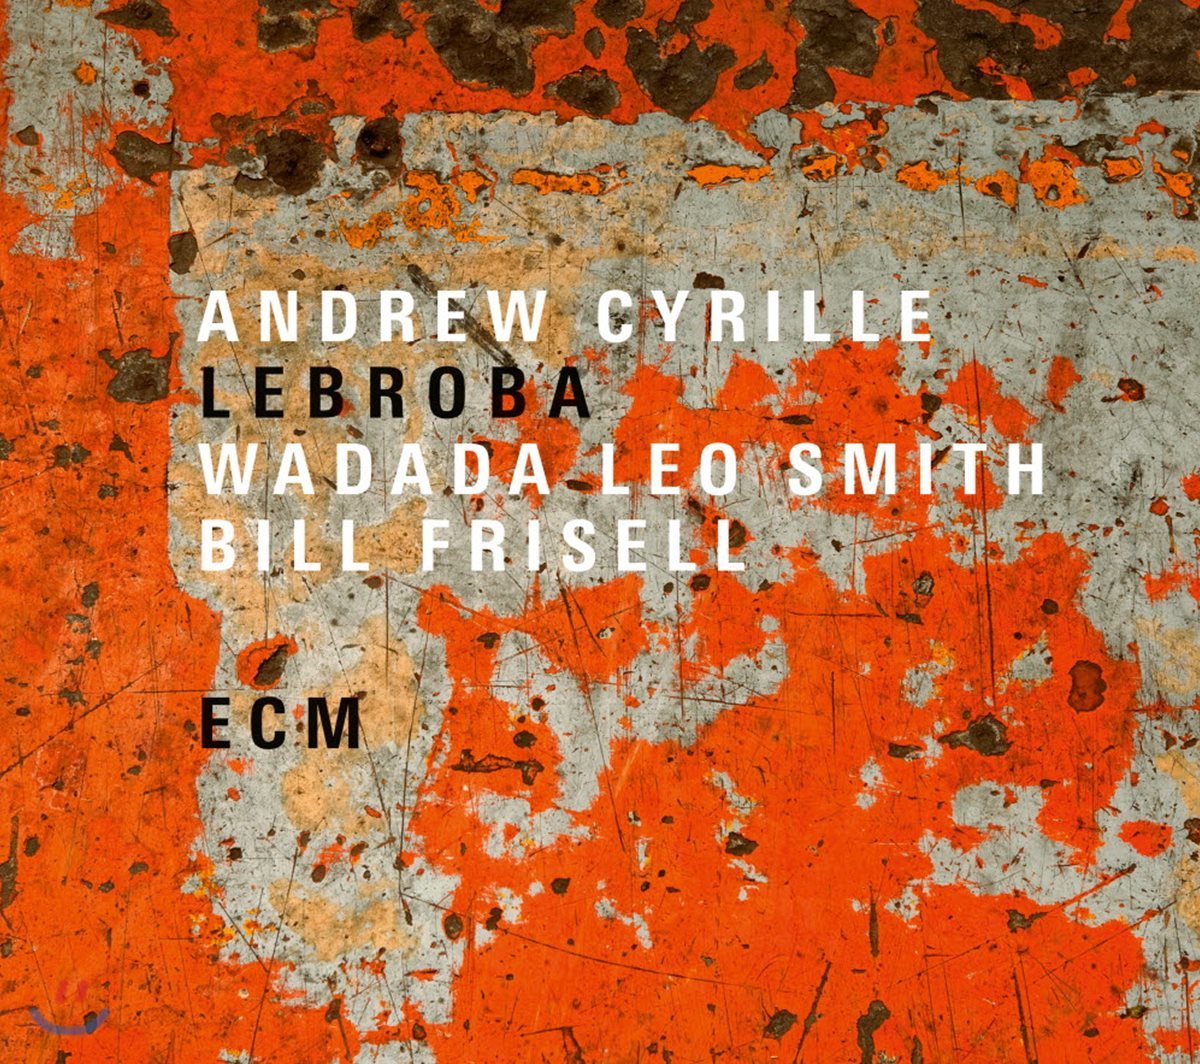 Andrew Cyrille / Bill Frisell / Wadada Leo Smith - Lebroba [LP]